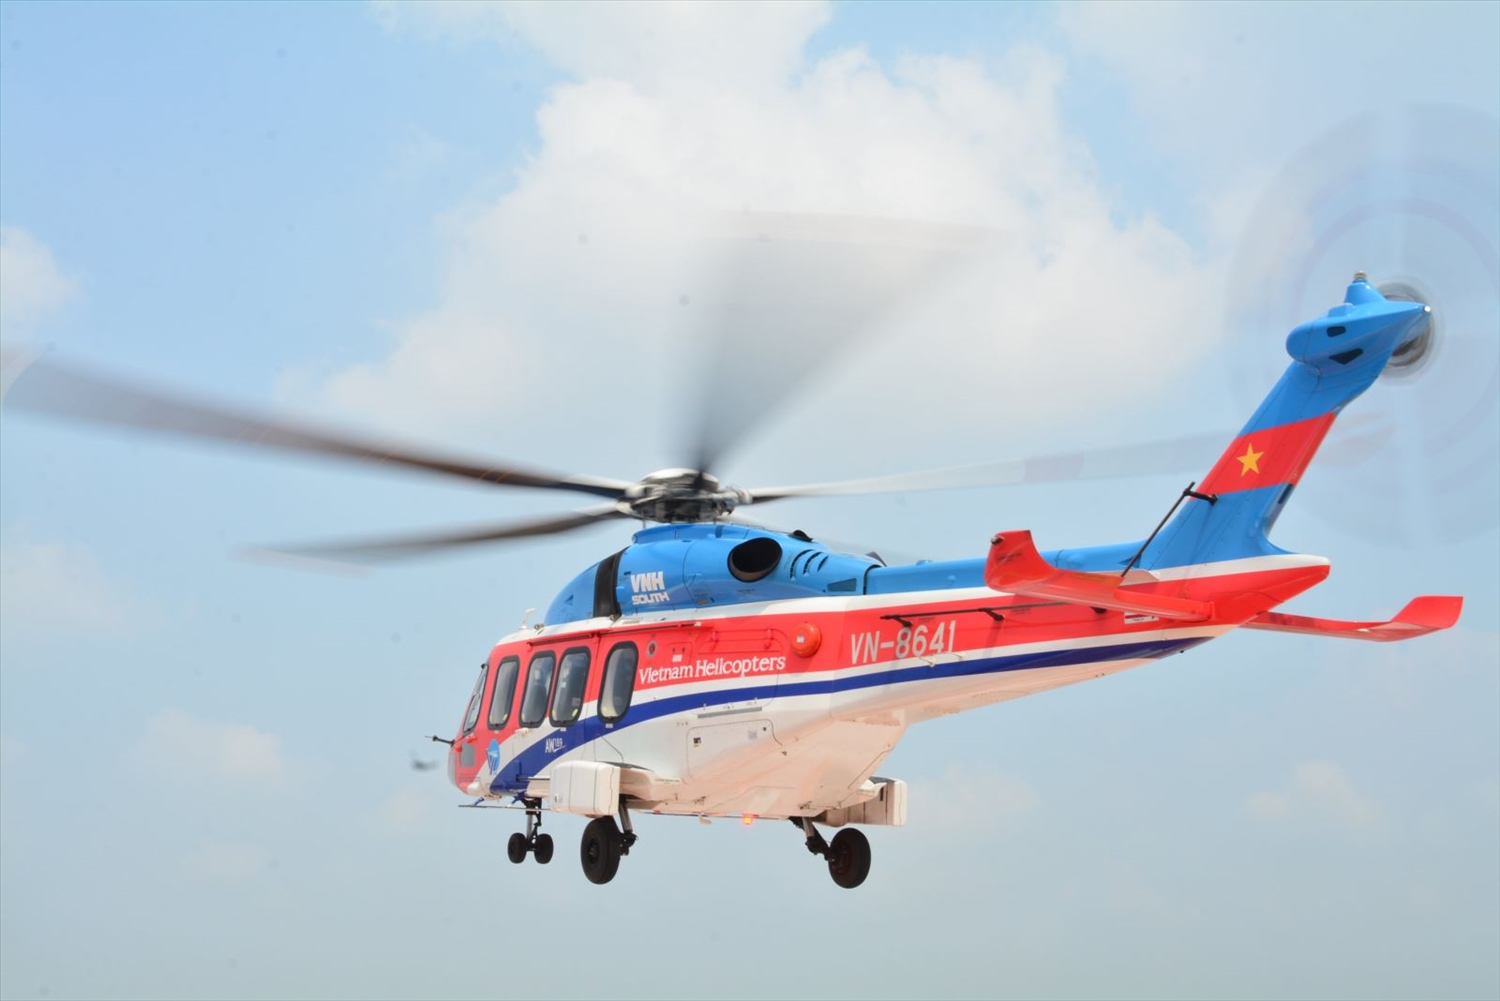 Tour du lịch "Ngắm TP. Hồ Chí Minh từ trên cao bằng máy bay trực thăng" đang rất thu hút khách.